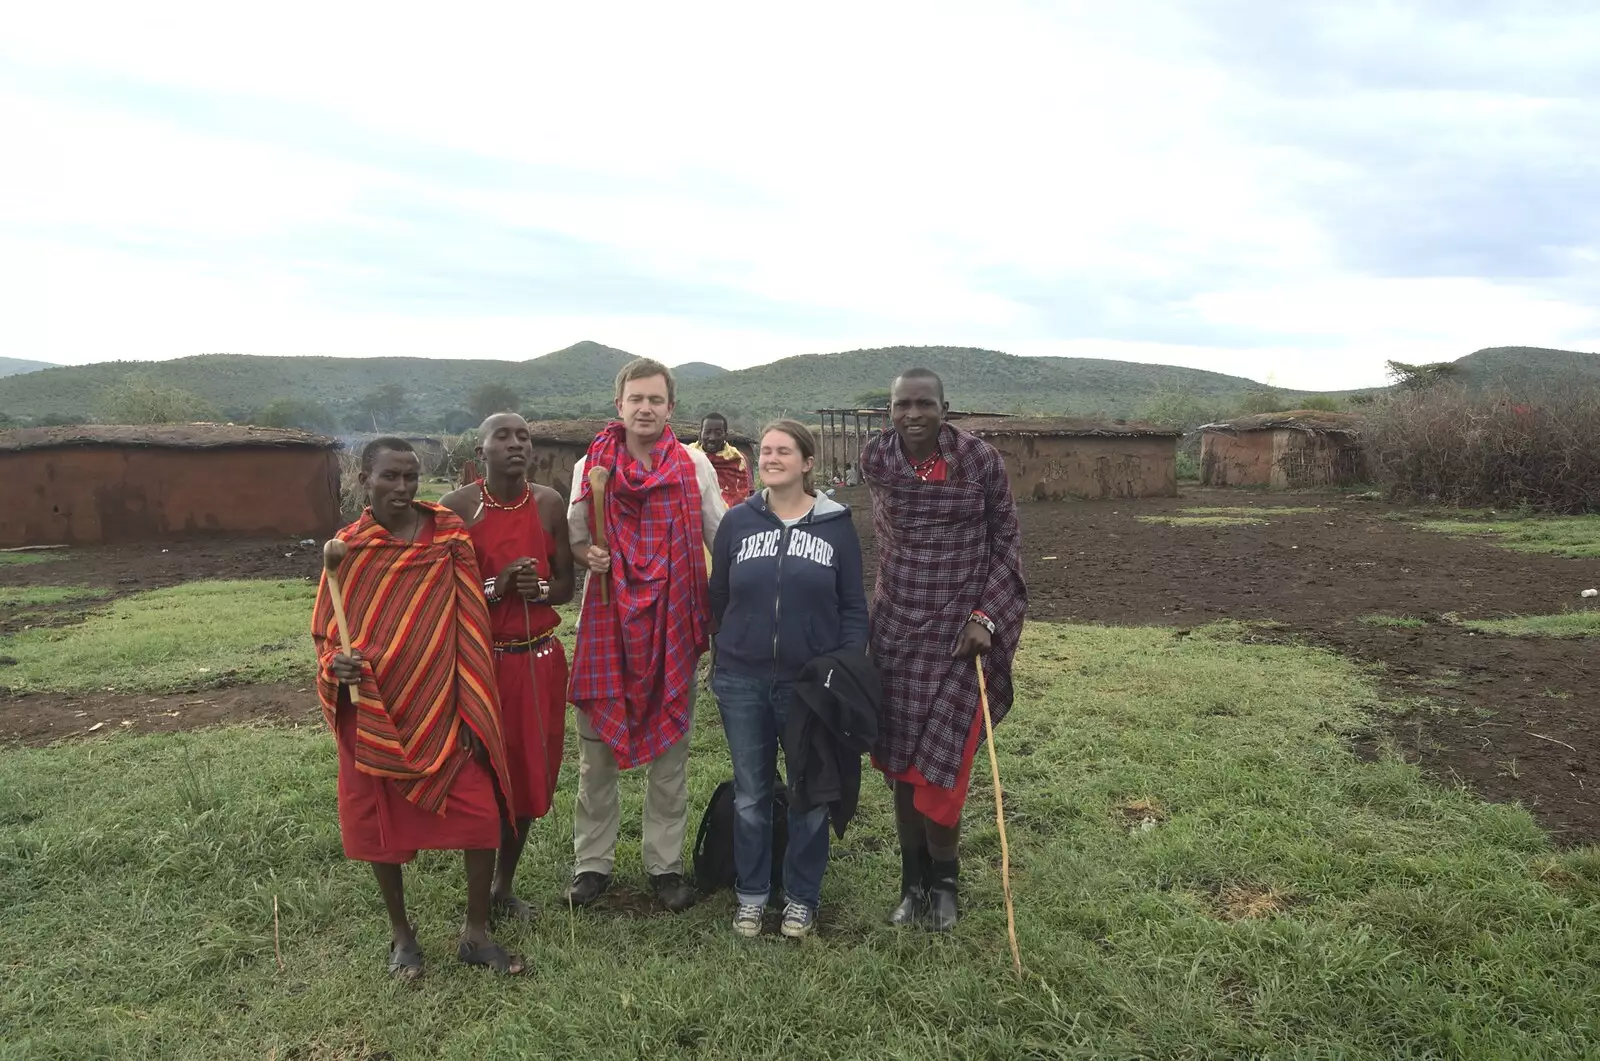 A group photo, from Maasai Mara Safari and a Maasai Village, Ololaimutia, Kenya - 5th November 2010